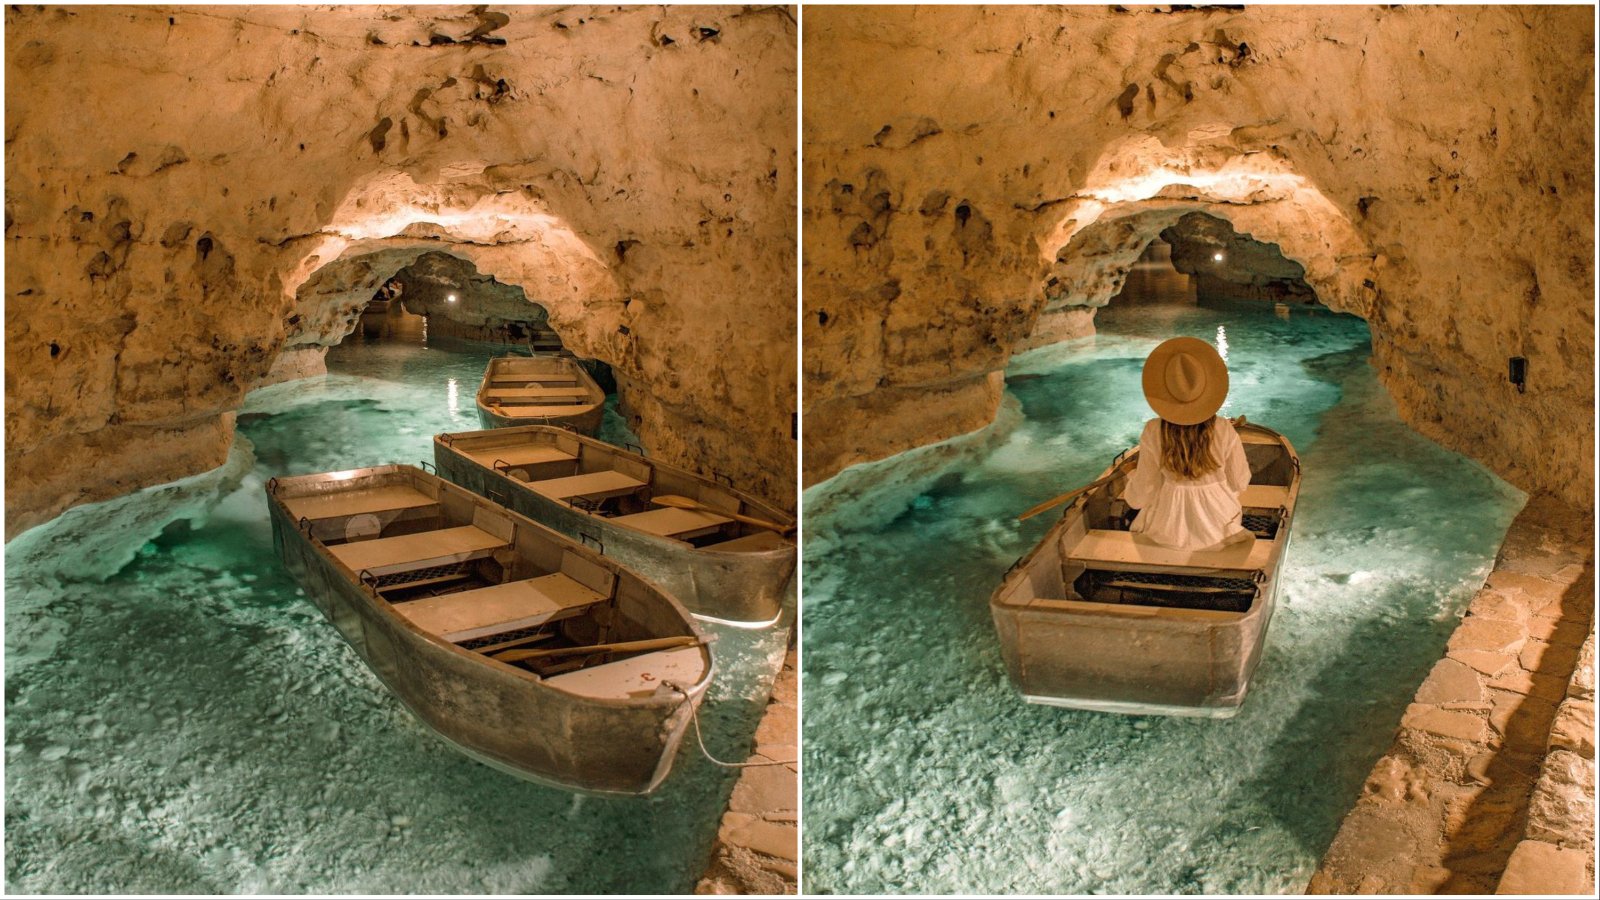 INSTA(NT) TRAVEL: Nezaboravna vožnja čamcem podzemnim jezerom u Mađarskoj